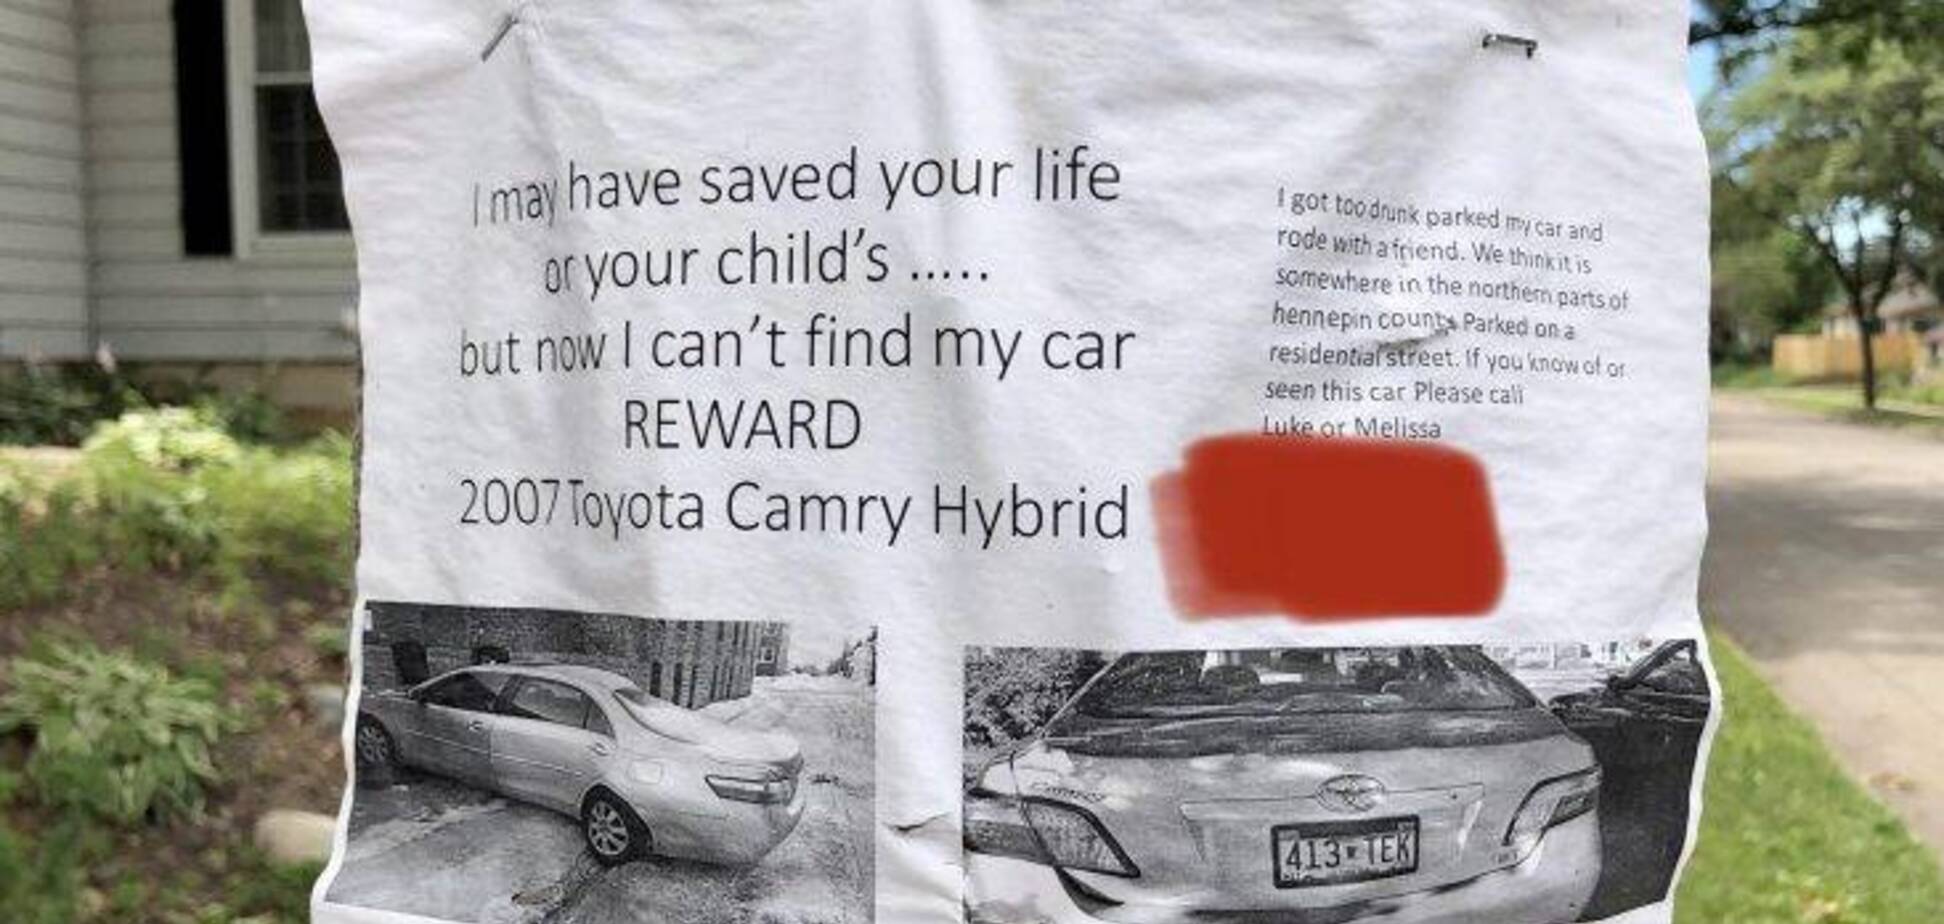 Водитель по пьяни потерял Toyota Camry и теперь ищет ее через объявления